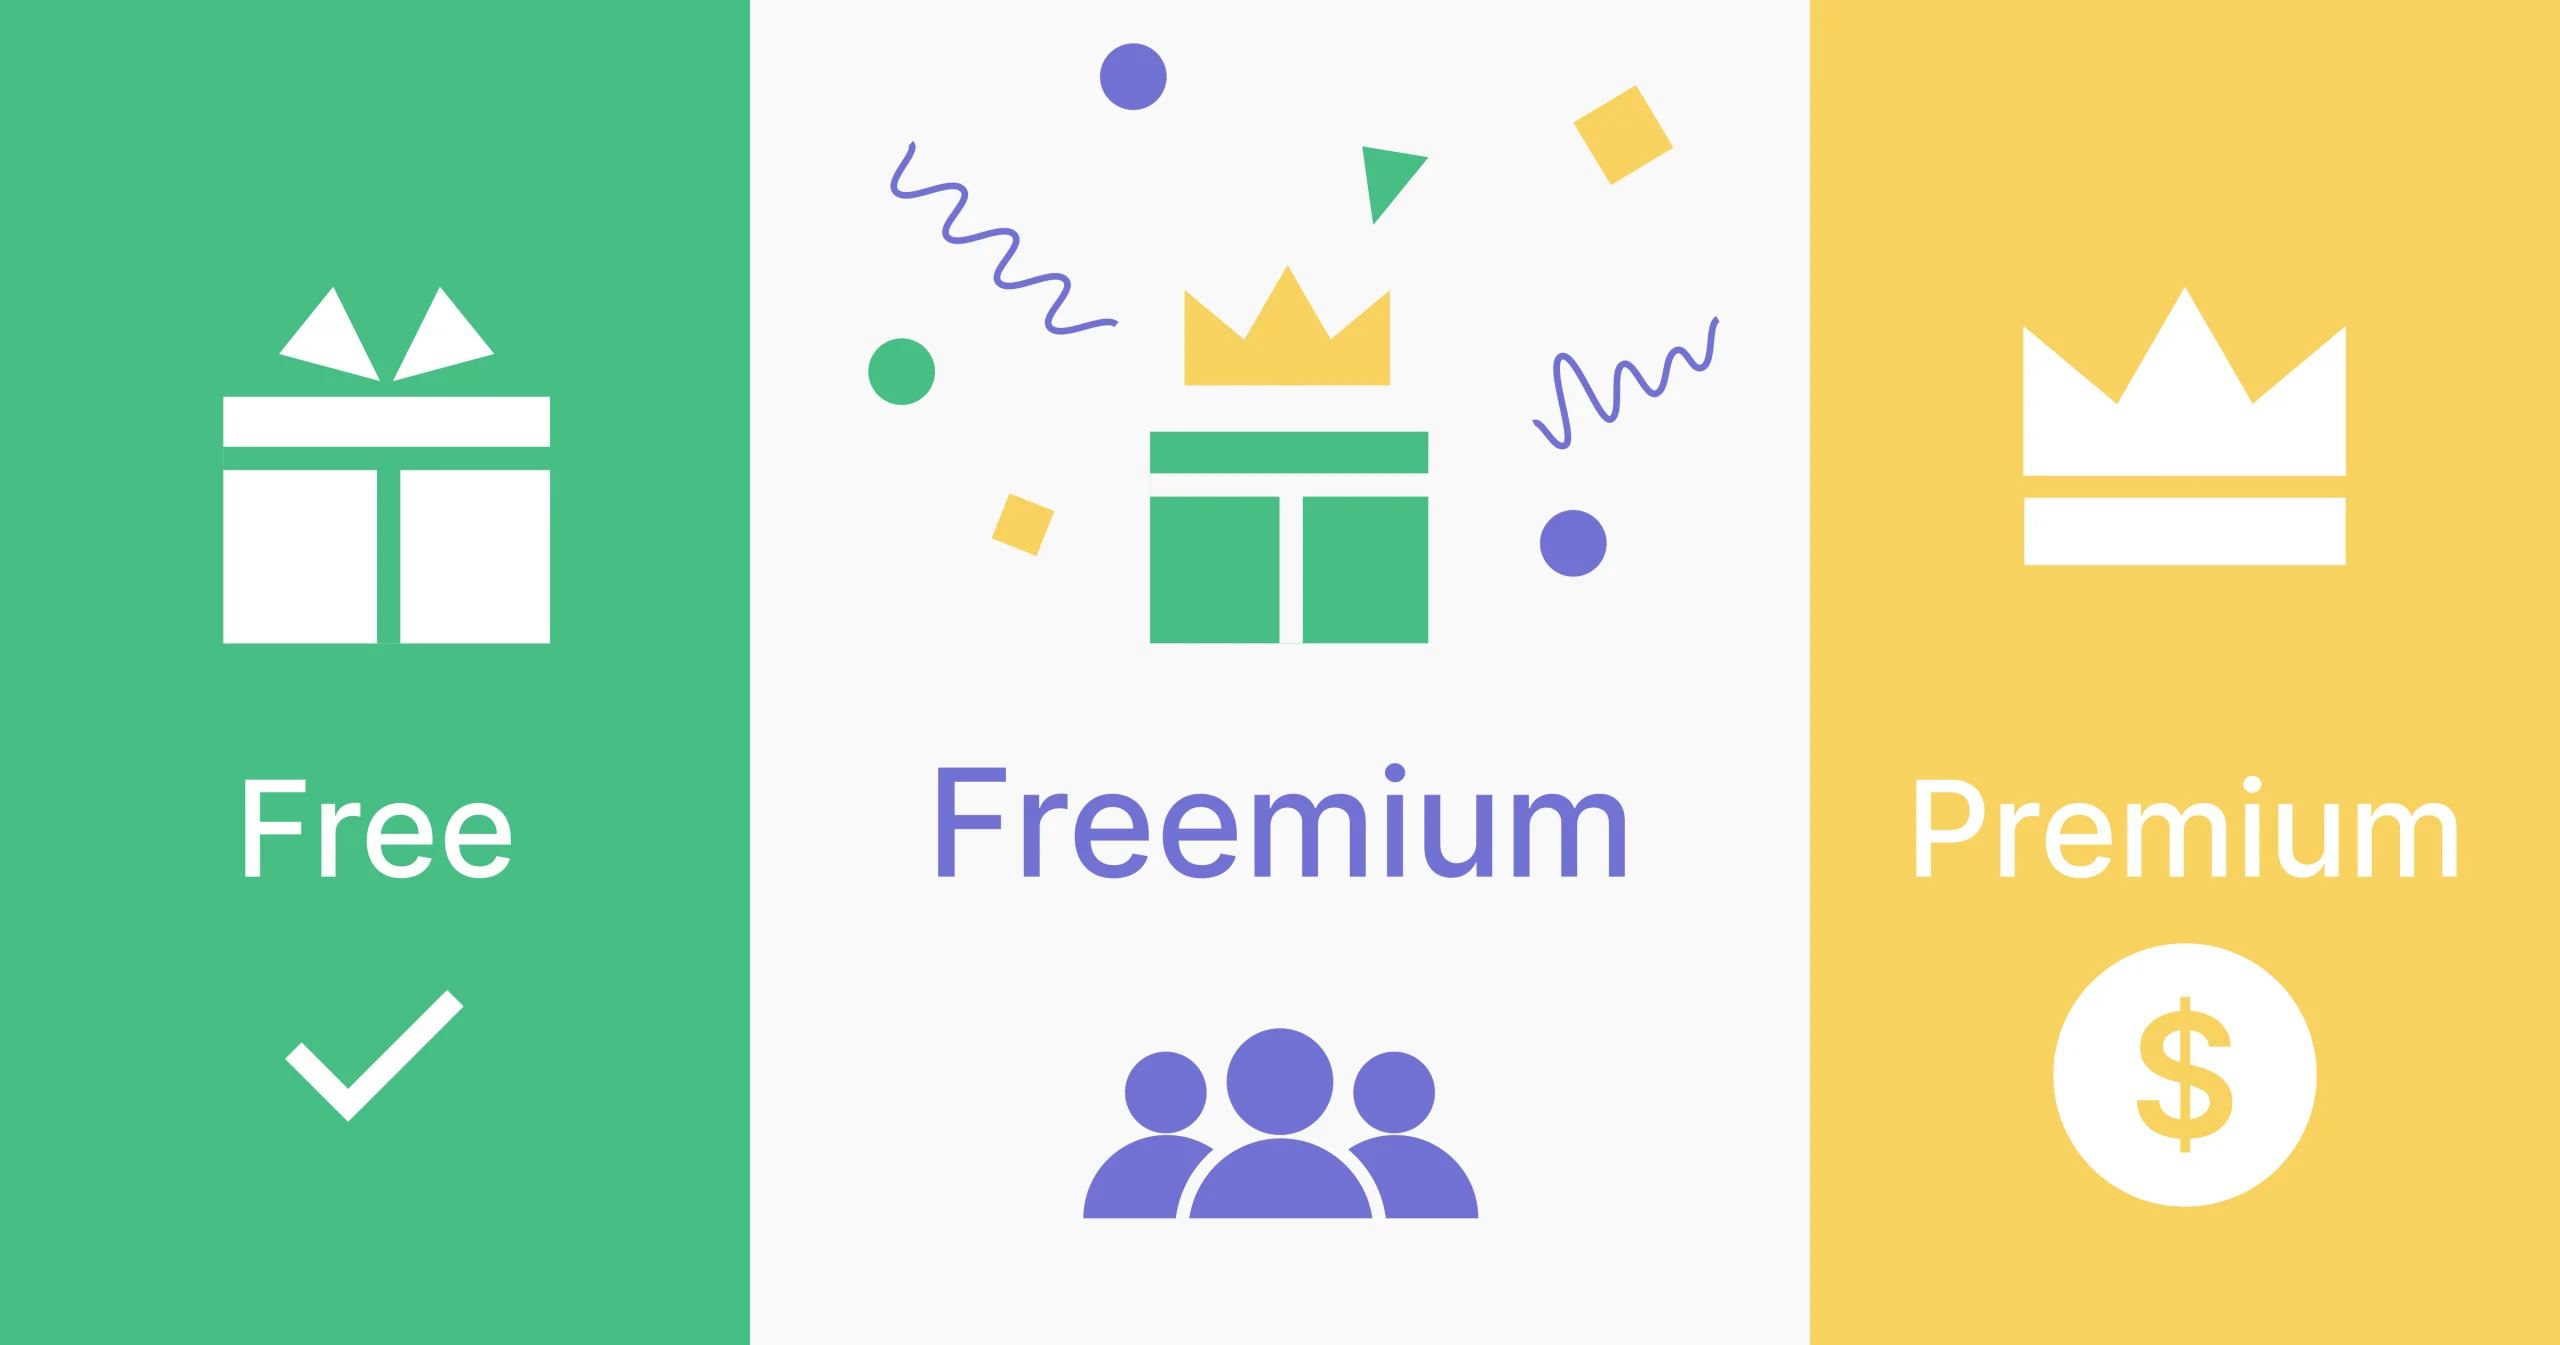 Free, Premium, and Freemium